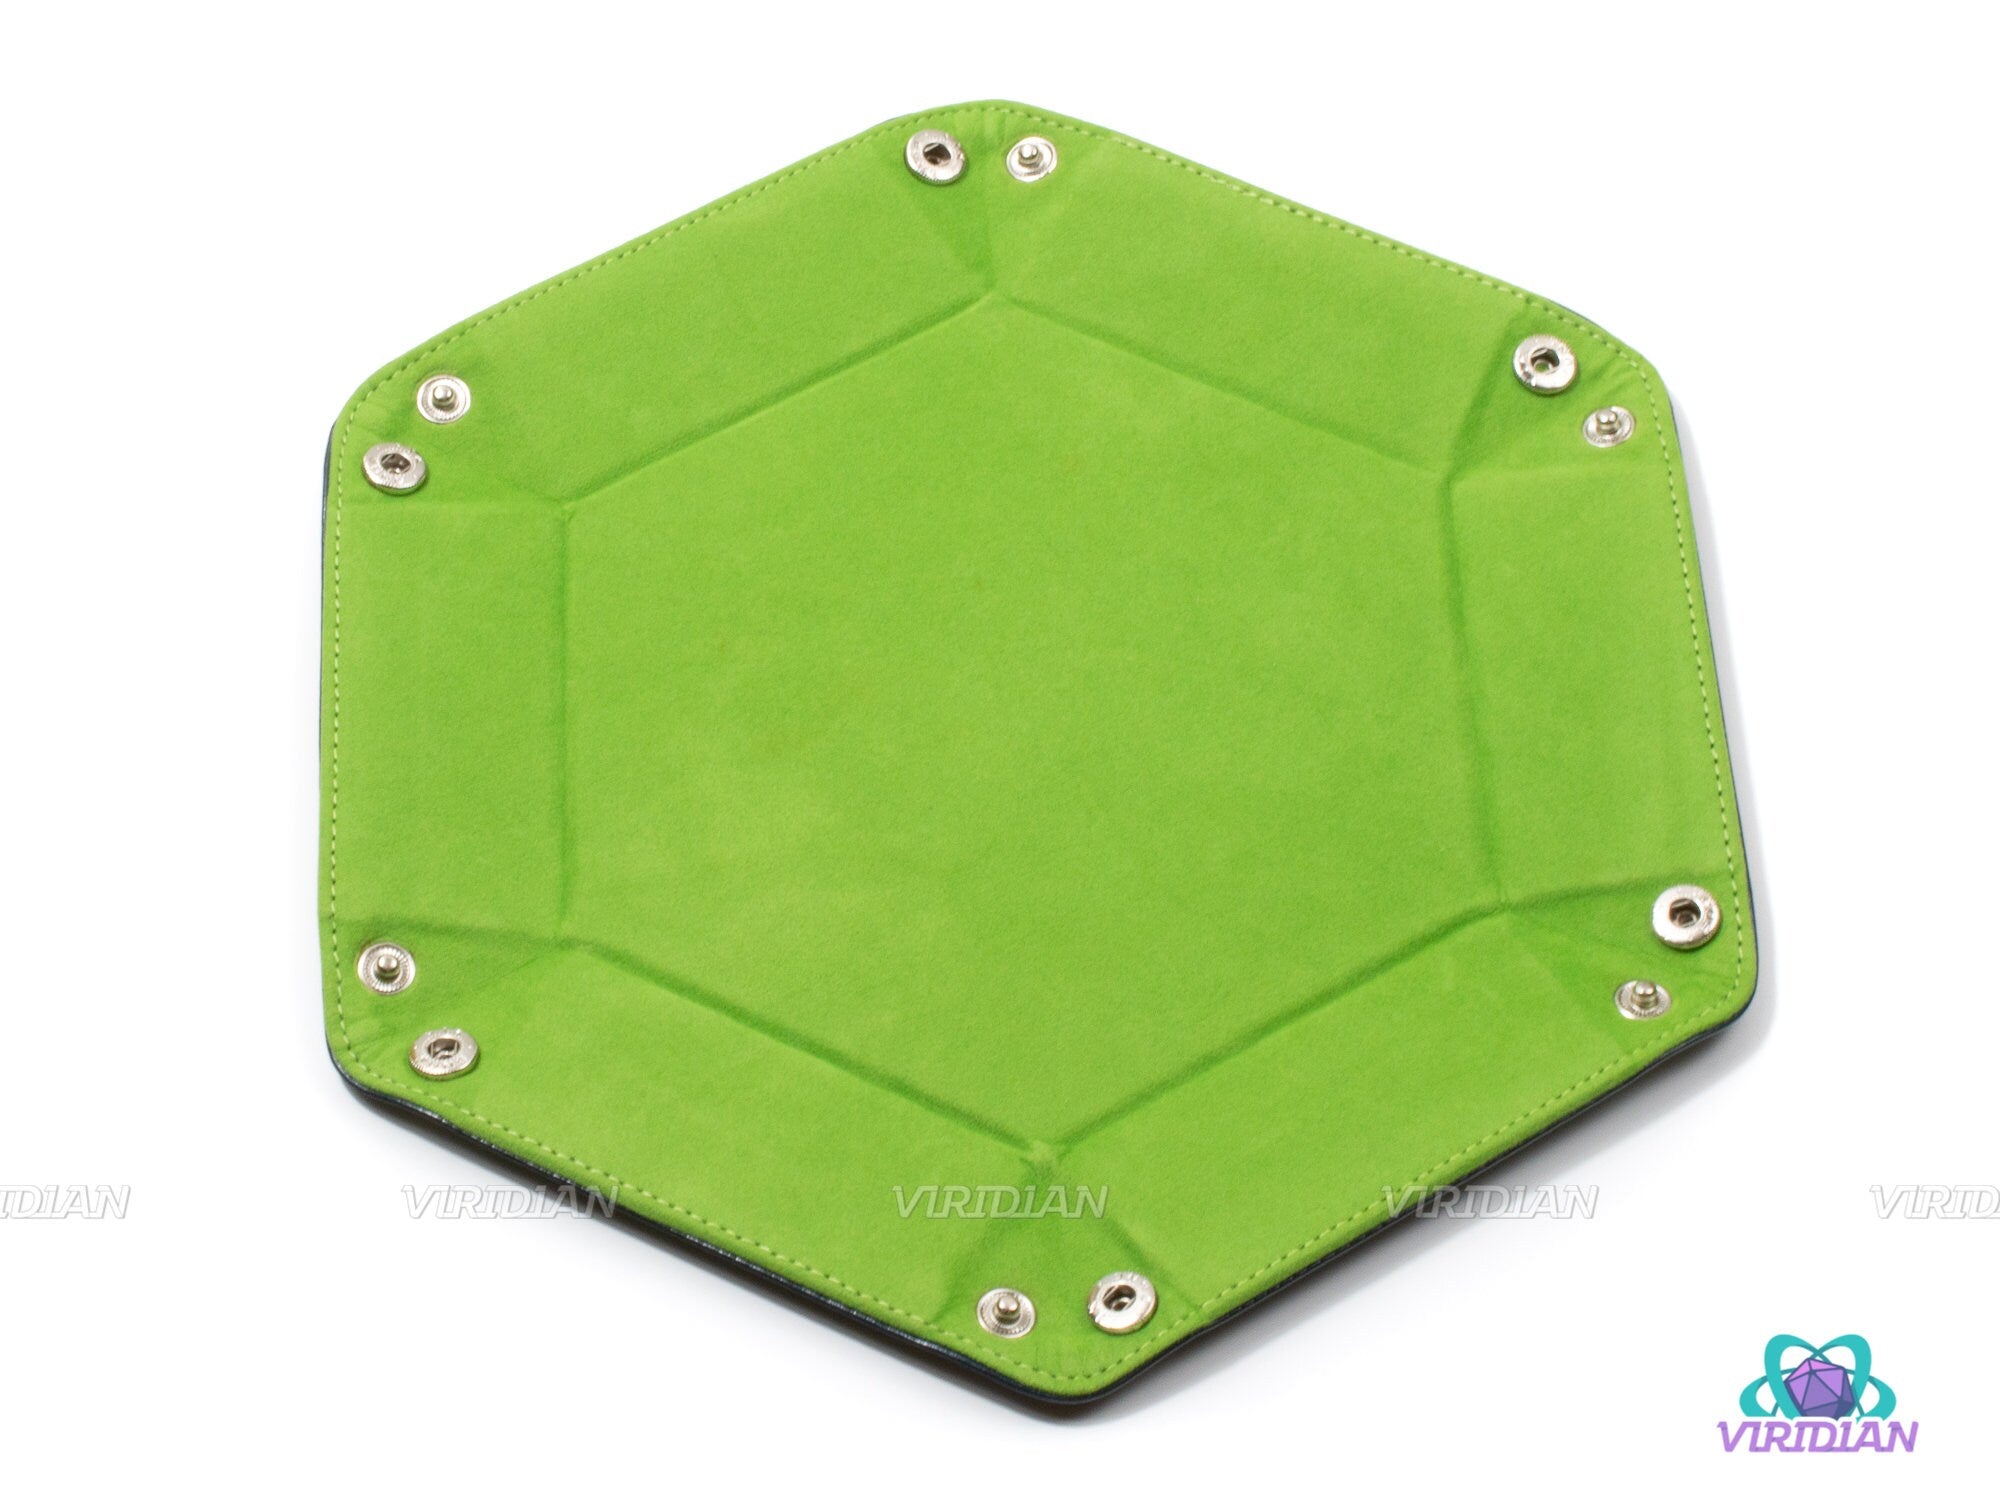 Hexagonal Dice Tray | Foldable Velvet & TPU Leather Rolling Mat |  DnD, RPG Games, TTRPG